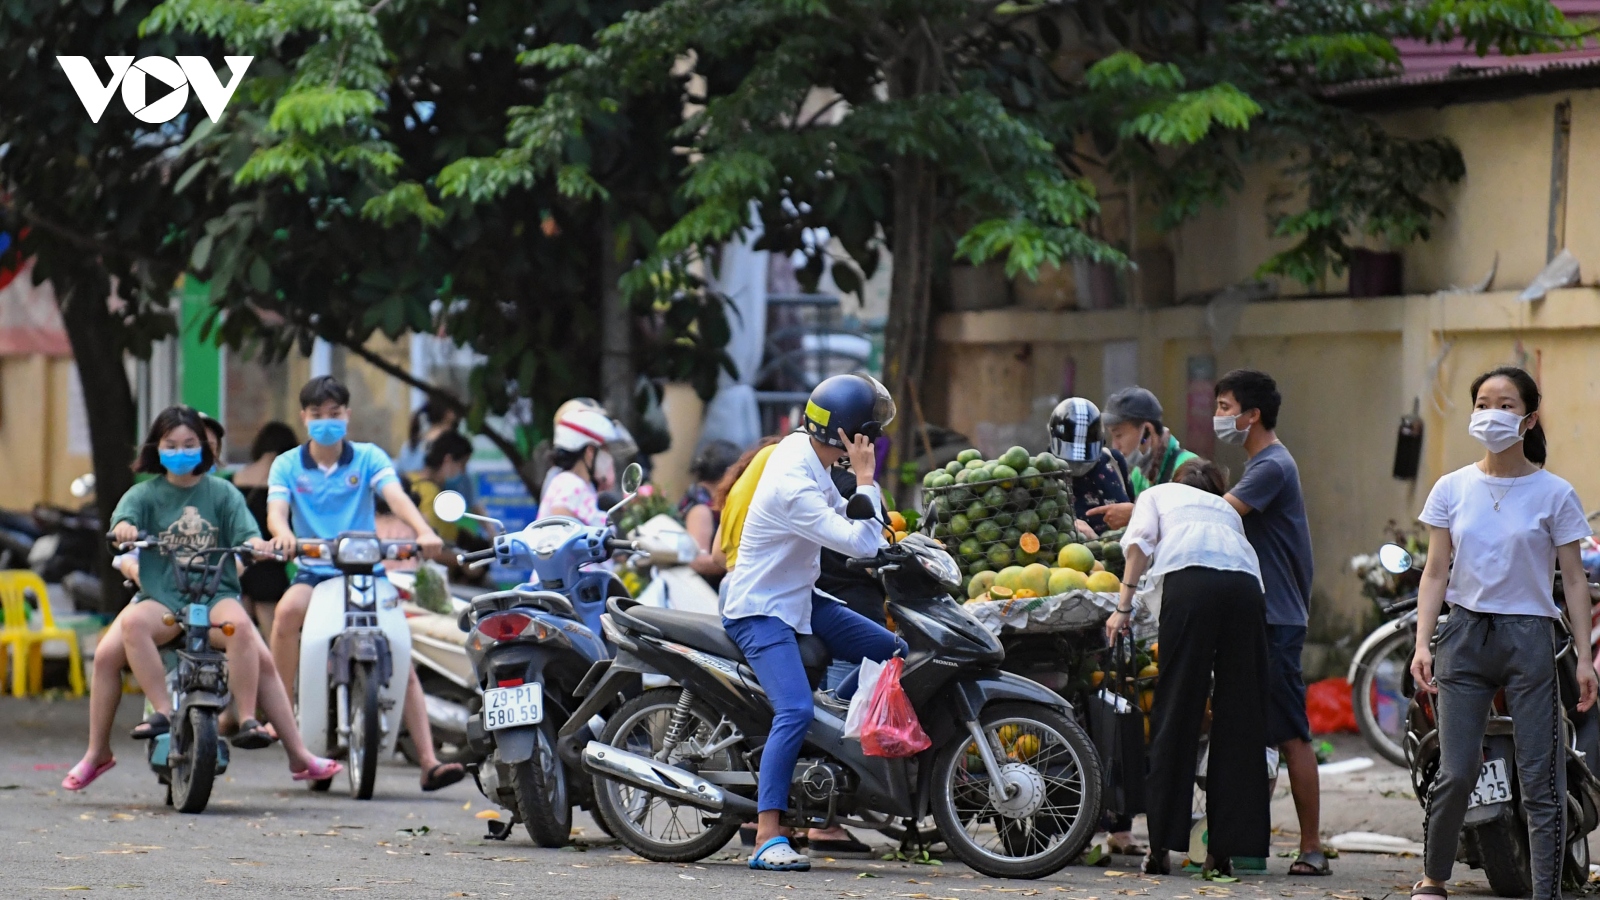 Dịch Covid-19 diễn biến phức tạp, nhiều chợ "cóc" ở Hà Nội vẫn hoạt động tấp nập